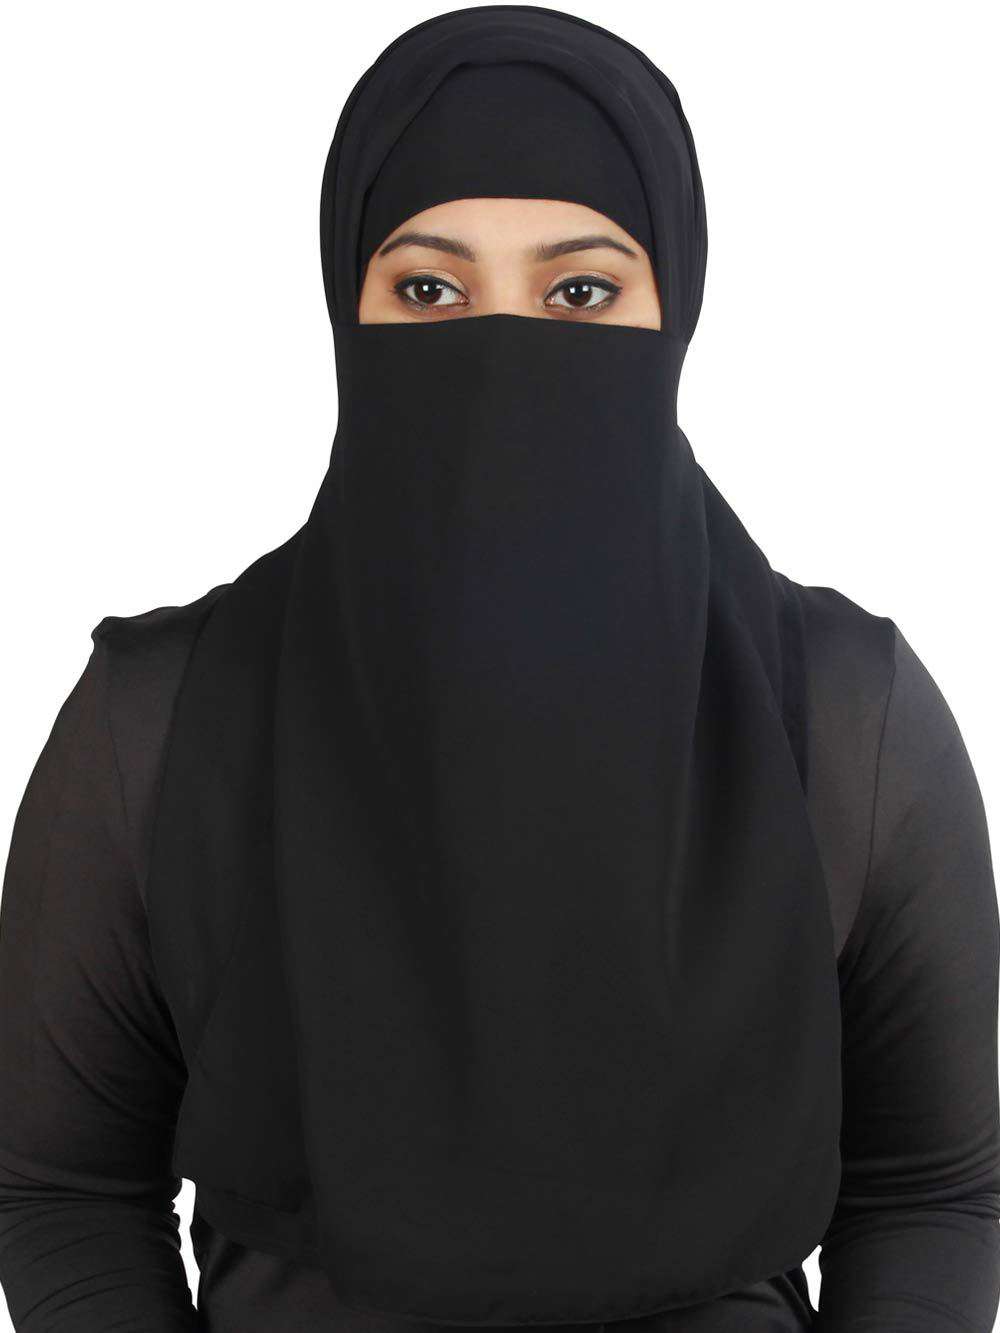 hijab wife black man Sex Images Hq